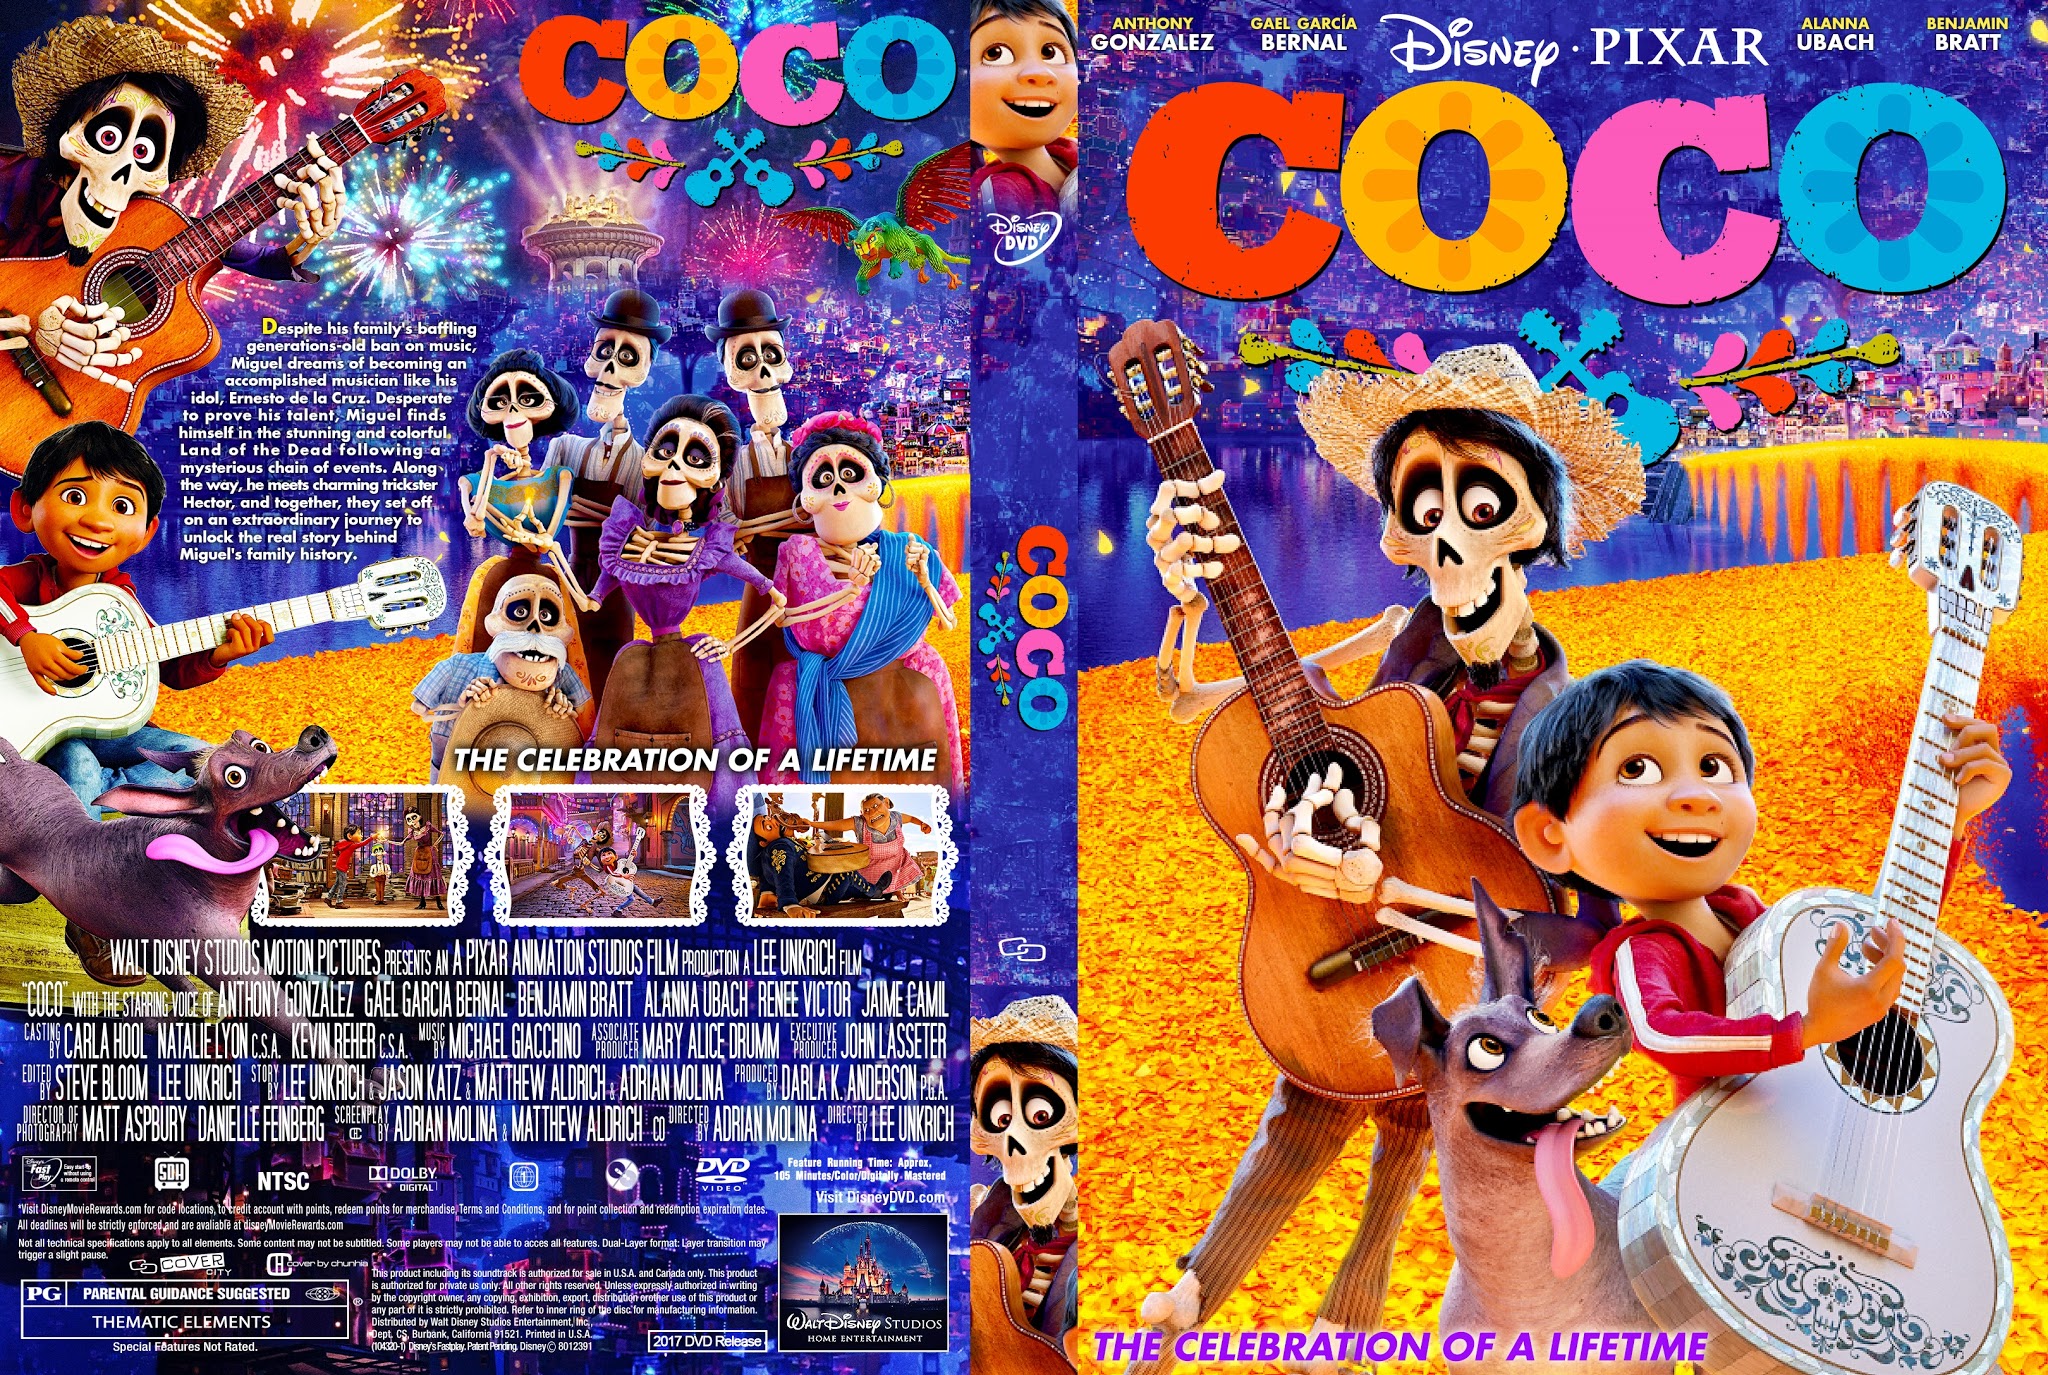 COCO DVD Cover.